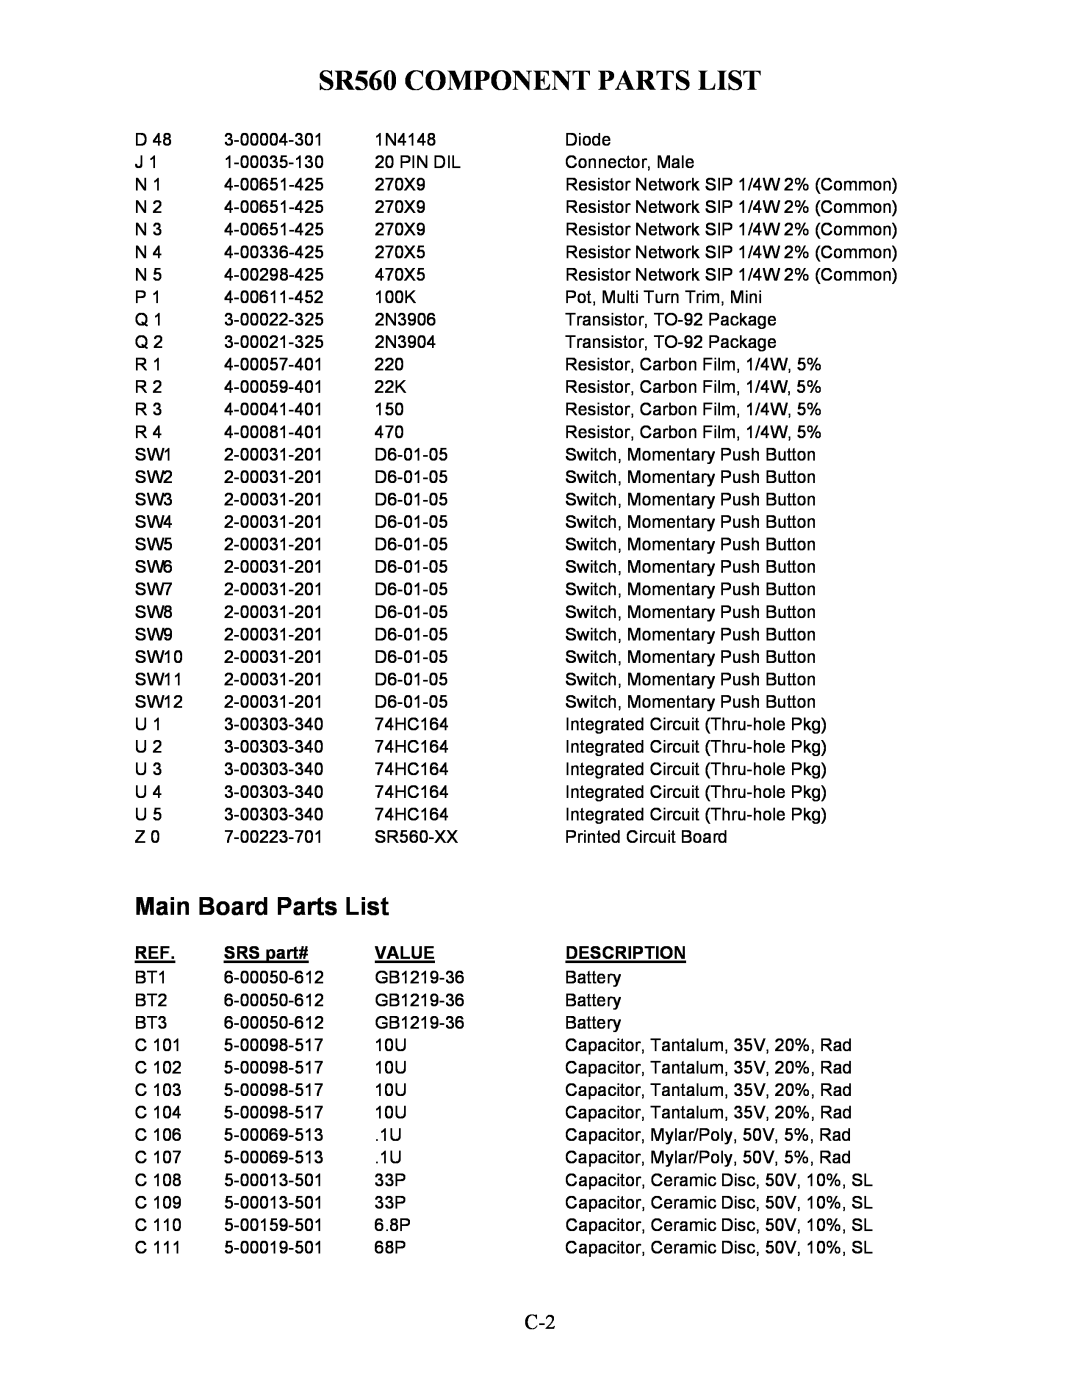 SRS Labs manual Main Board Parts List, SR560 COMPONENT PARTS LIST, SRS part#, Value, Description 